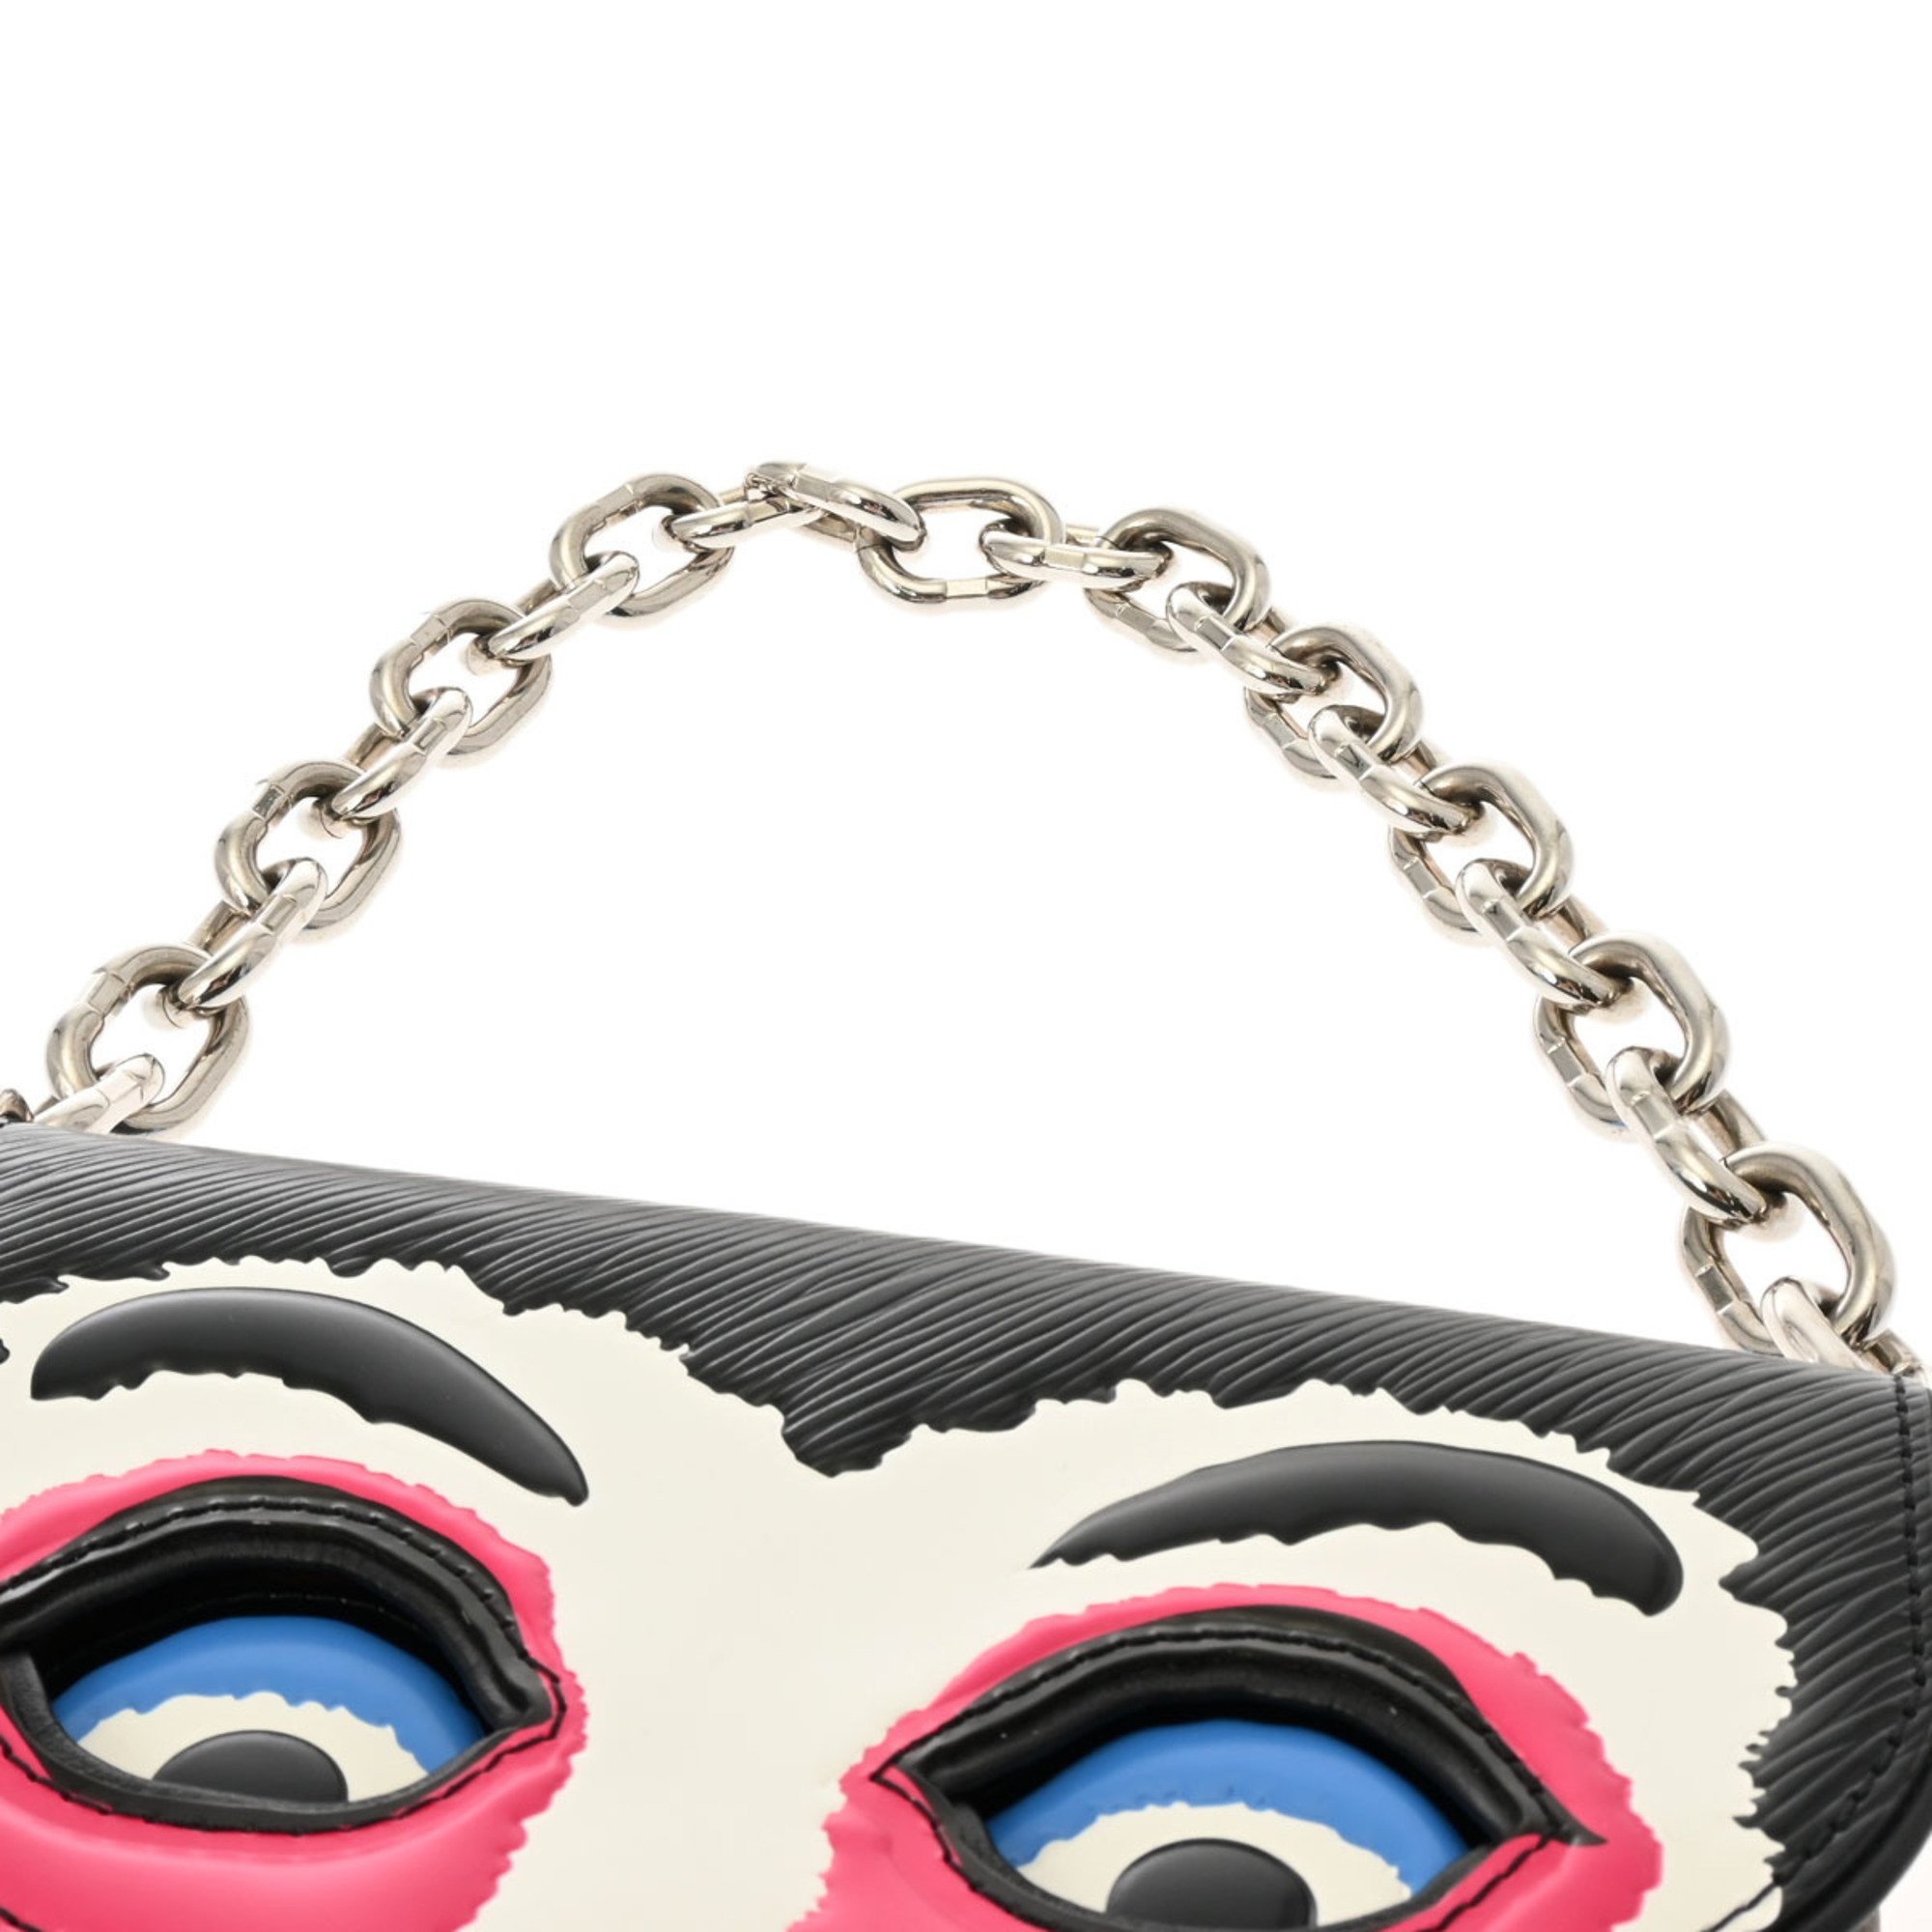 LOUIS VUITTON Louis Vuitton Monogram Pochette Kabuki Mask Brown M43495 Women's Reverse Canvas Shoulder Bag